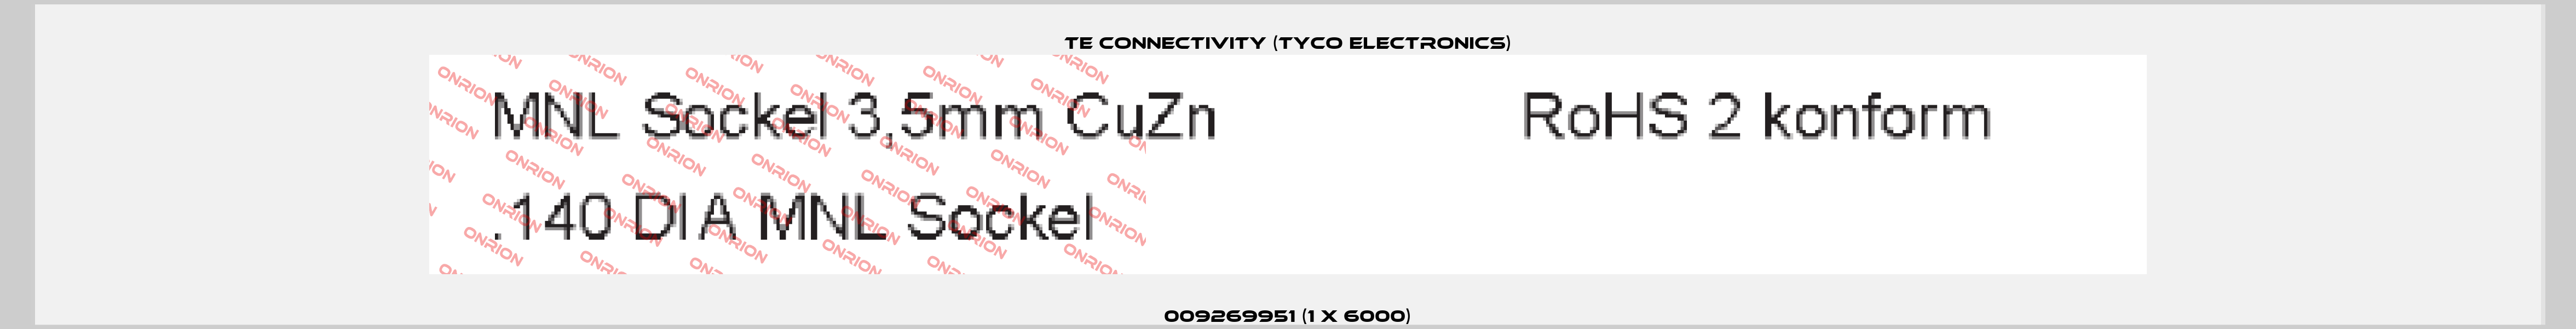 009269951 (1 x 6000) TE Connectivity (Tyco Electronics)